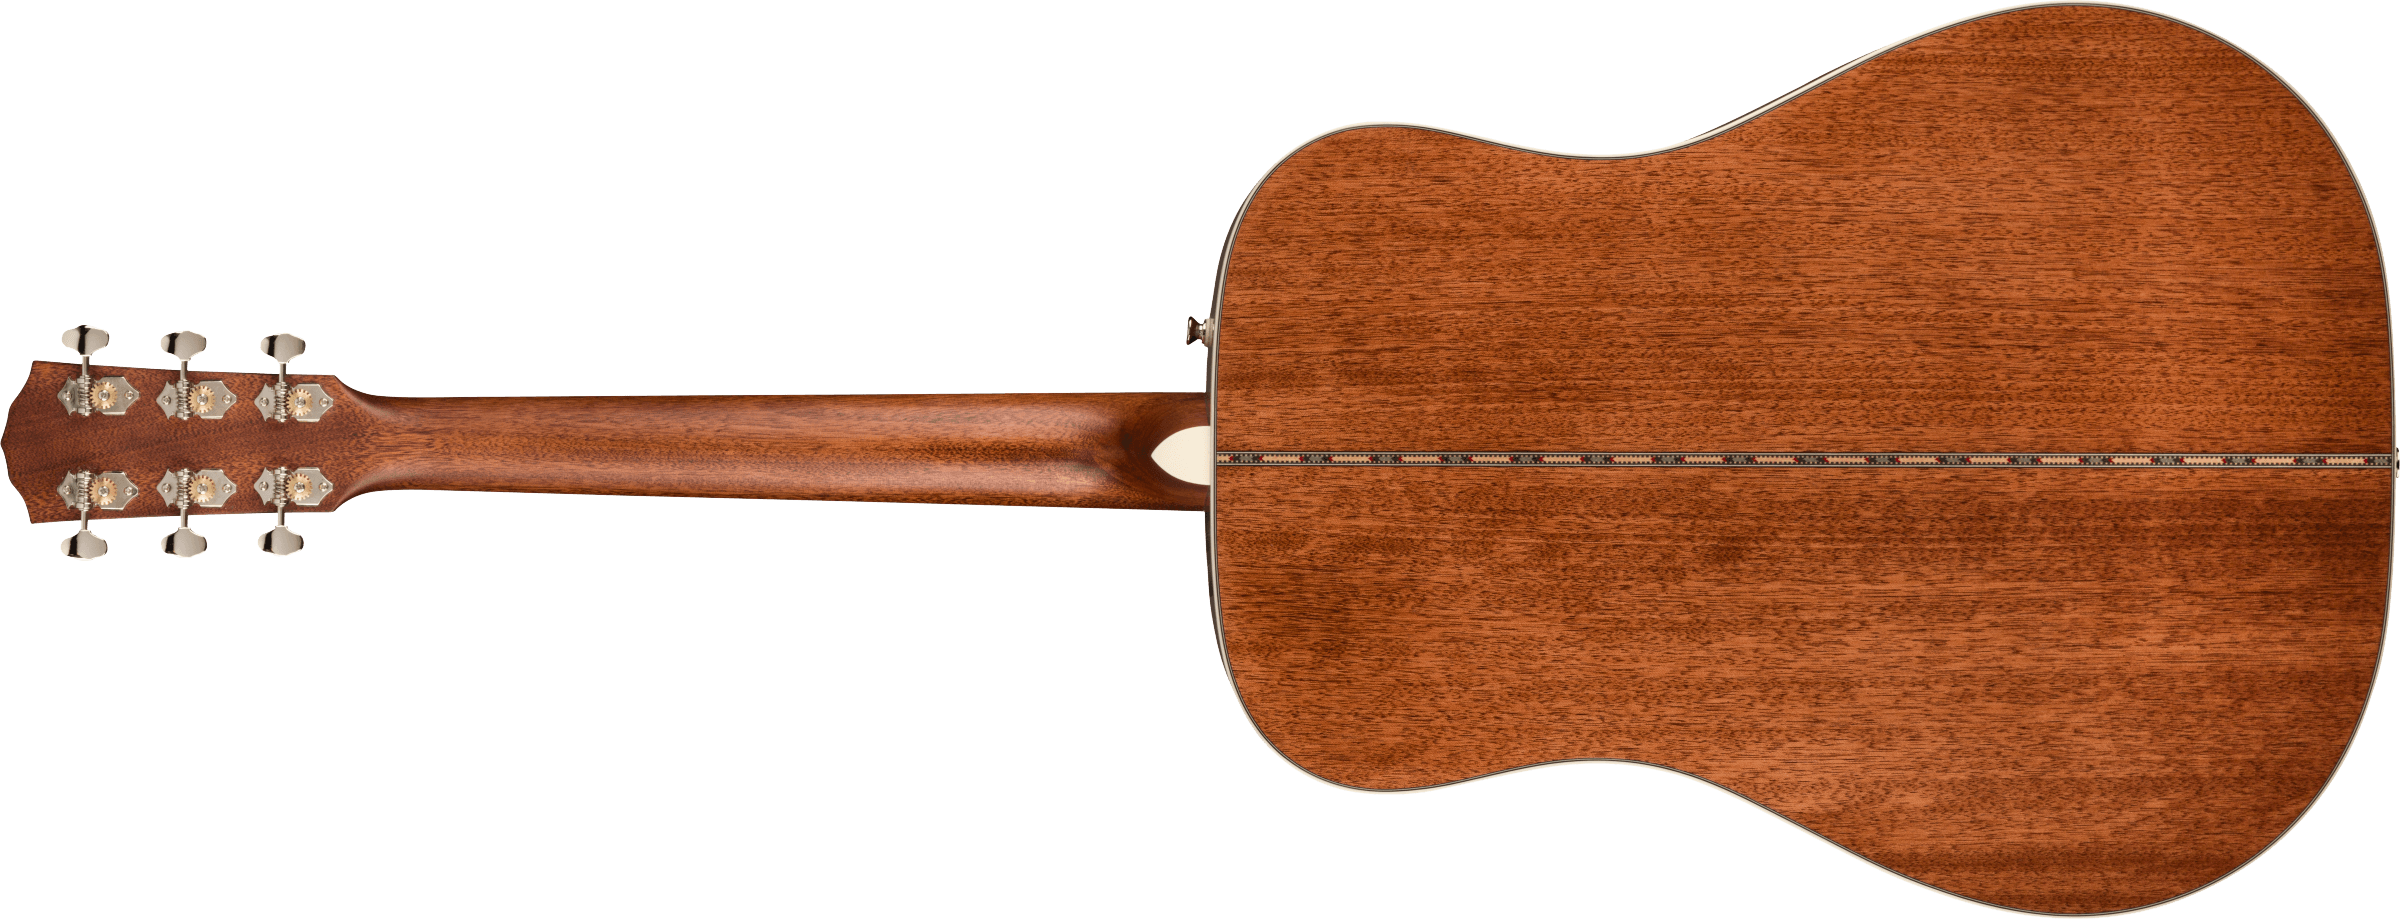 Fender Pd-220e Paramount Dreadnought Epicea Acajou Ova - 3-tone Vintage Sunburst - Guitare Electro Acoustique - Variation 1